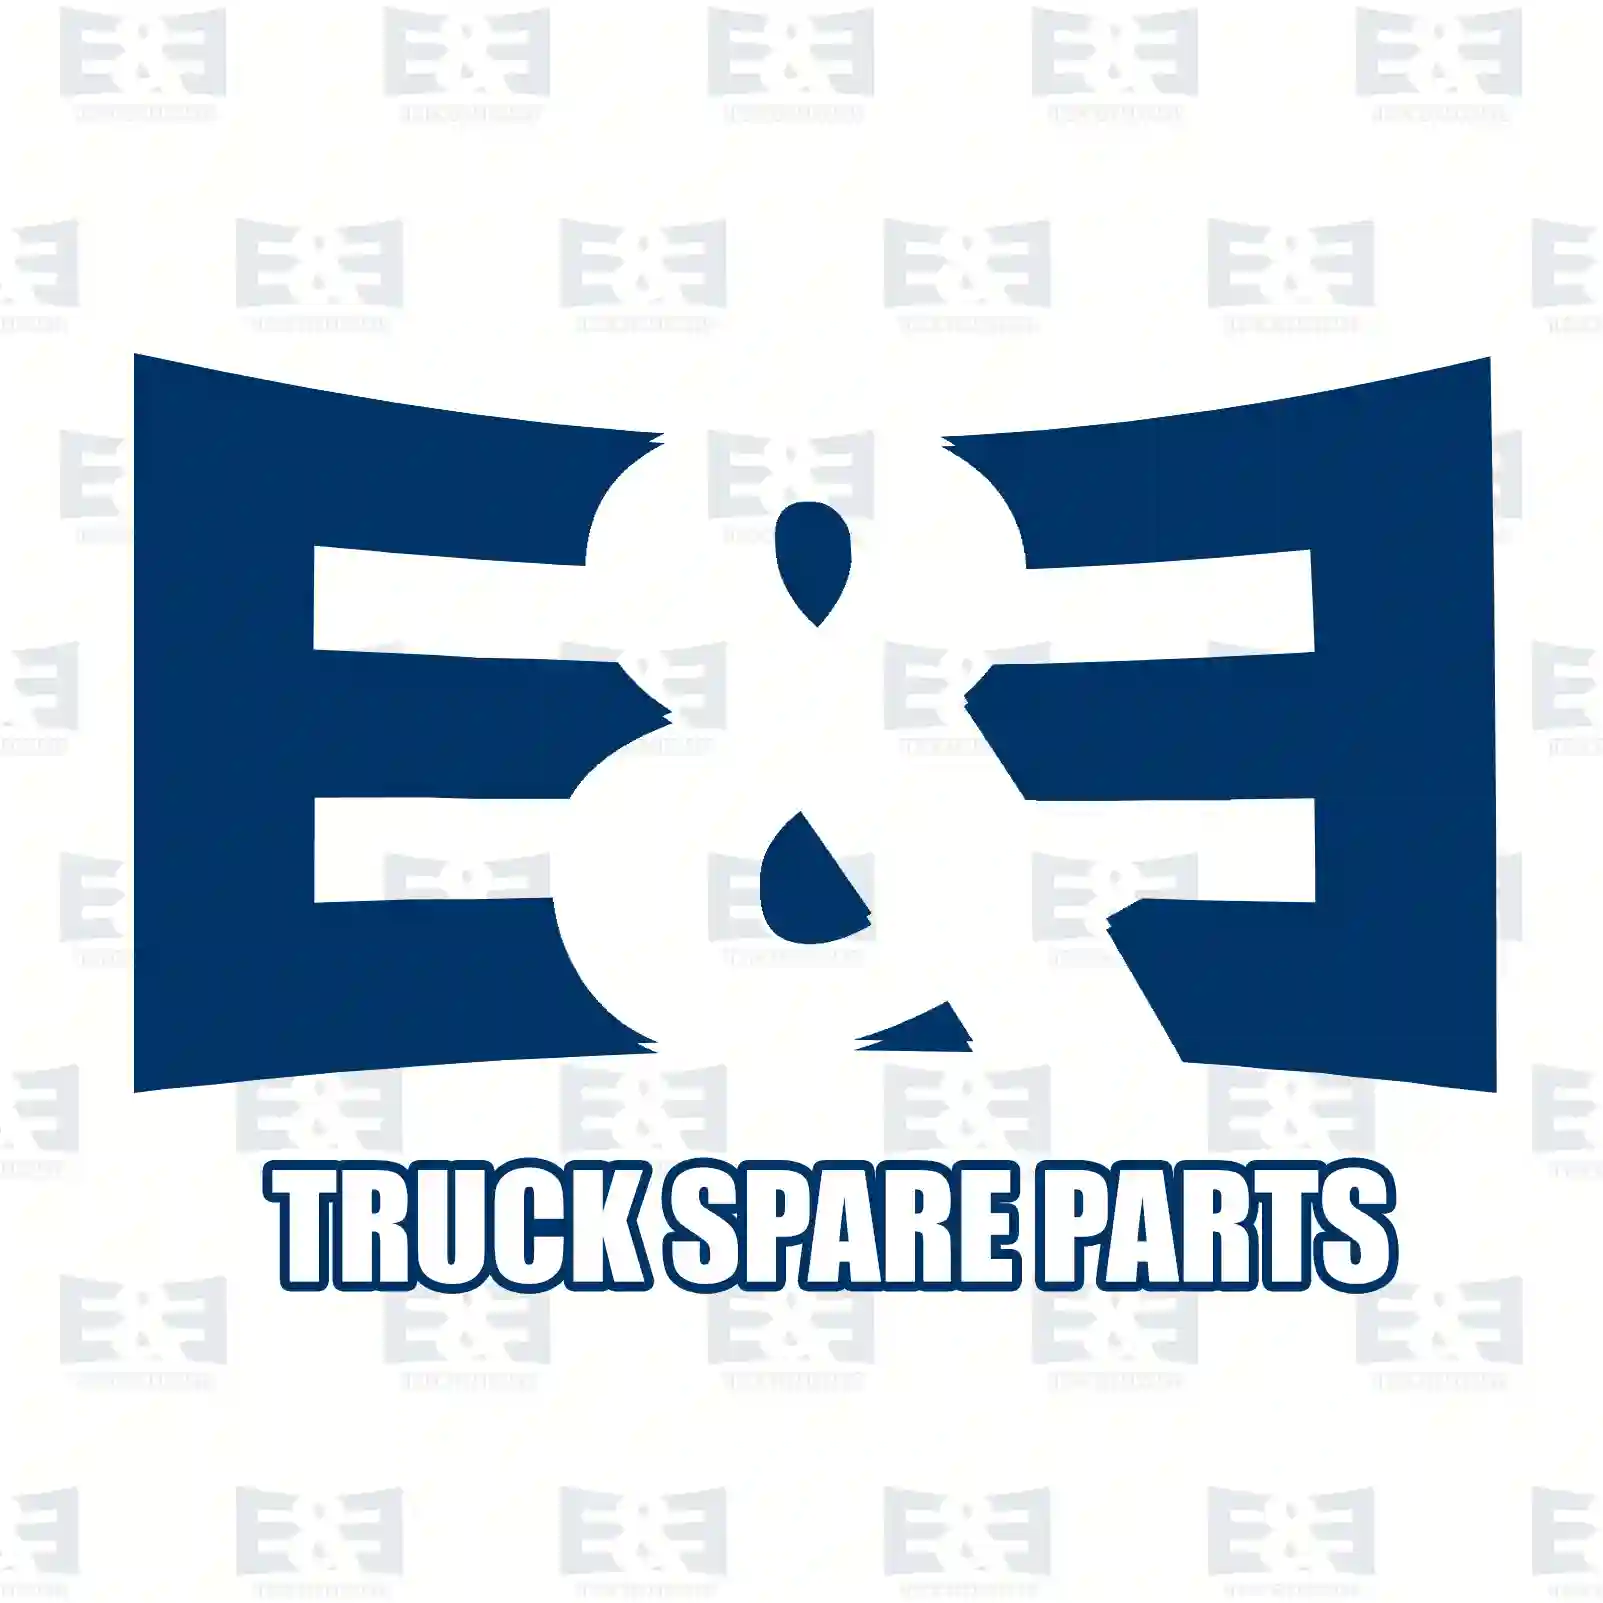 Cover, gear shift knob, 2E2278578, 6202680157, ZG30483-0008 ||  2E2278578 E&E Truck Spare Parts | Truck Spare Parts, Auotomotive Spare Parts Cover, gear shift knob, 2E2278578, 6202680157, ZG30483-0008 ||  2E2278578 E&E Truck Spare Parts | Truck Spare Parts, Auotomotive Spare Parts